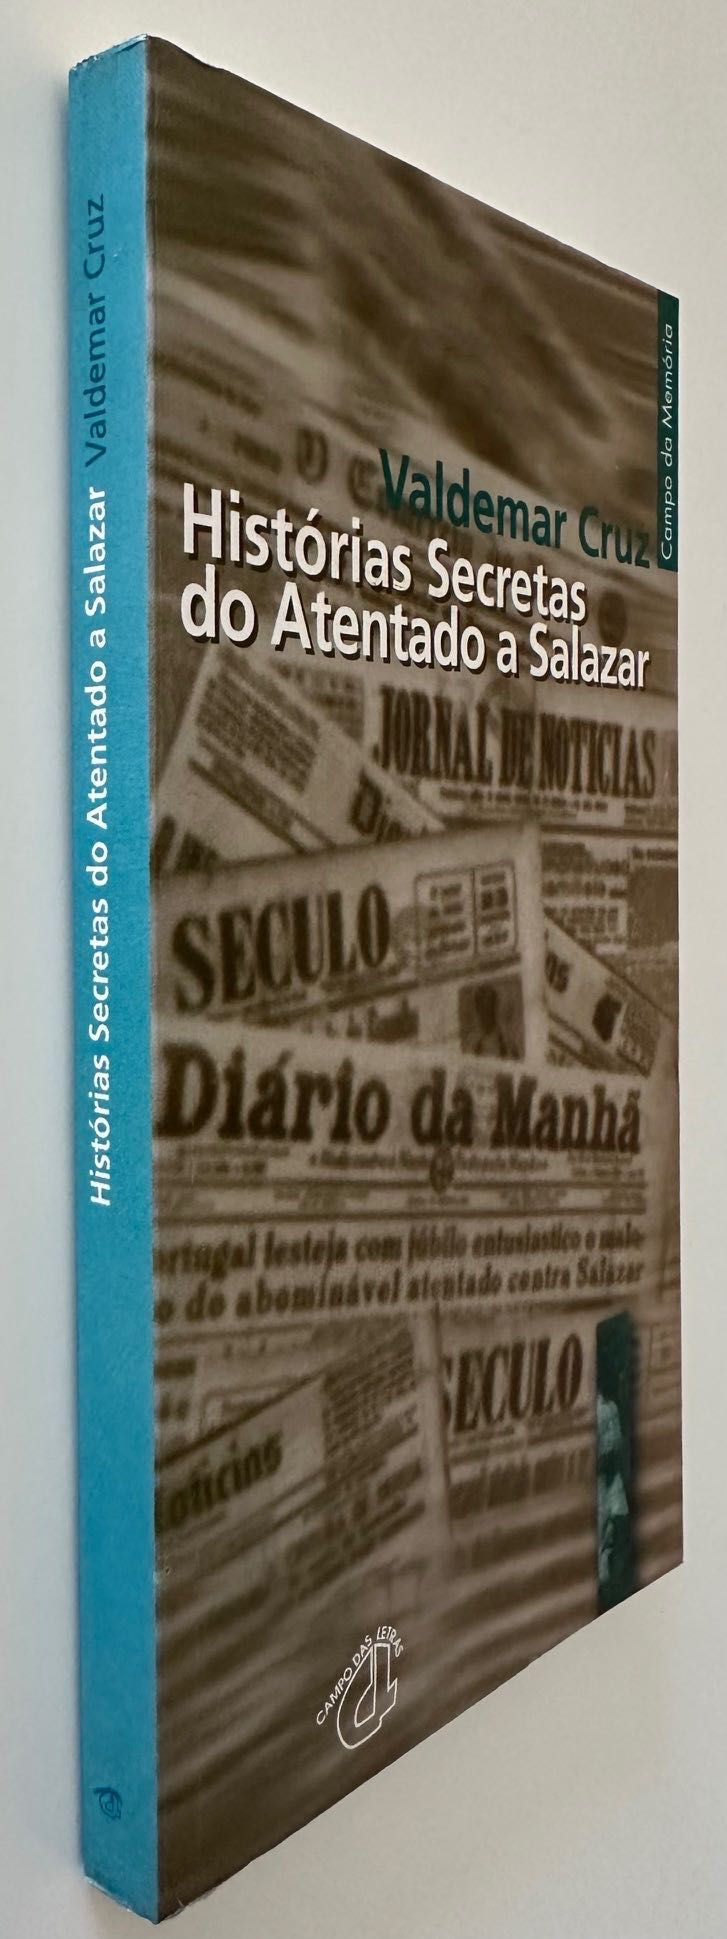 Histórias Secretas do Atentado a Salazar - Valdemar Cruz - 1999